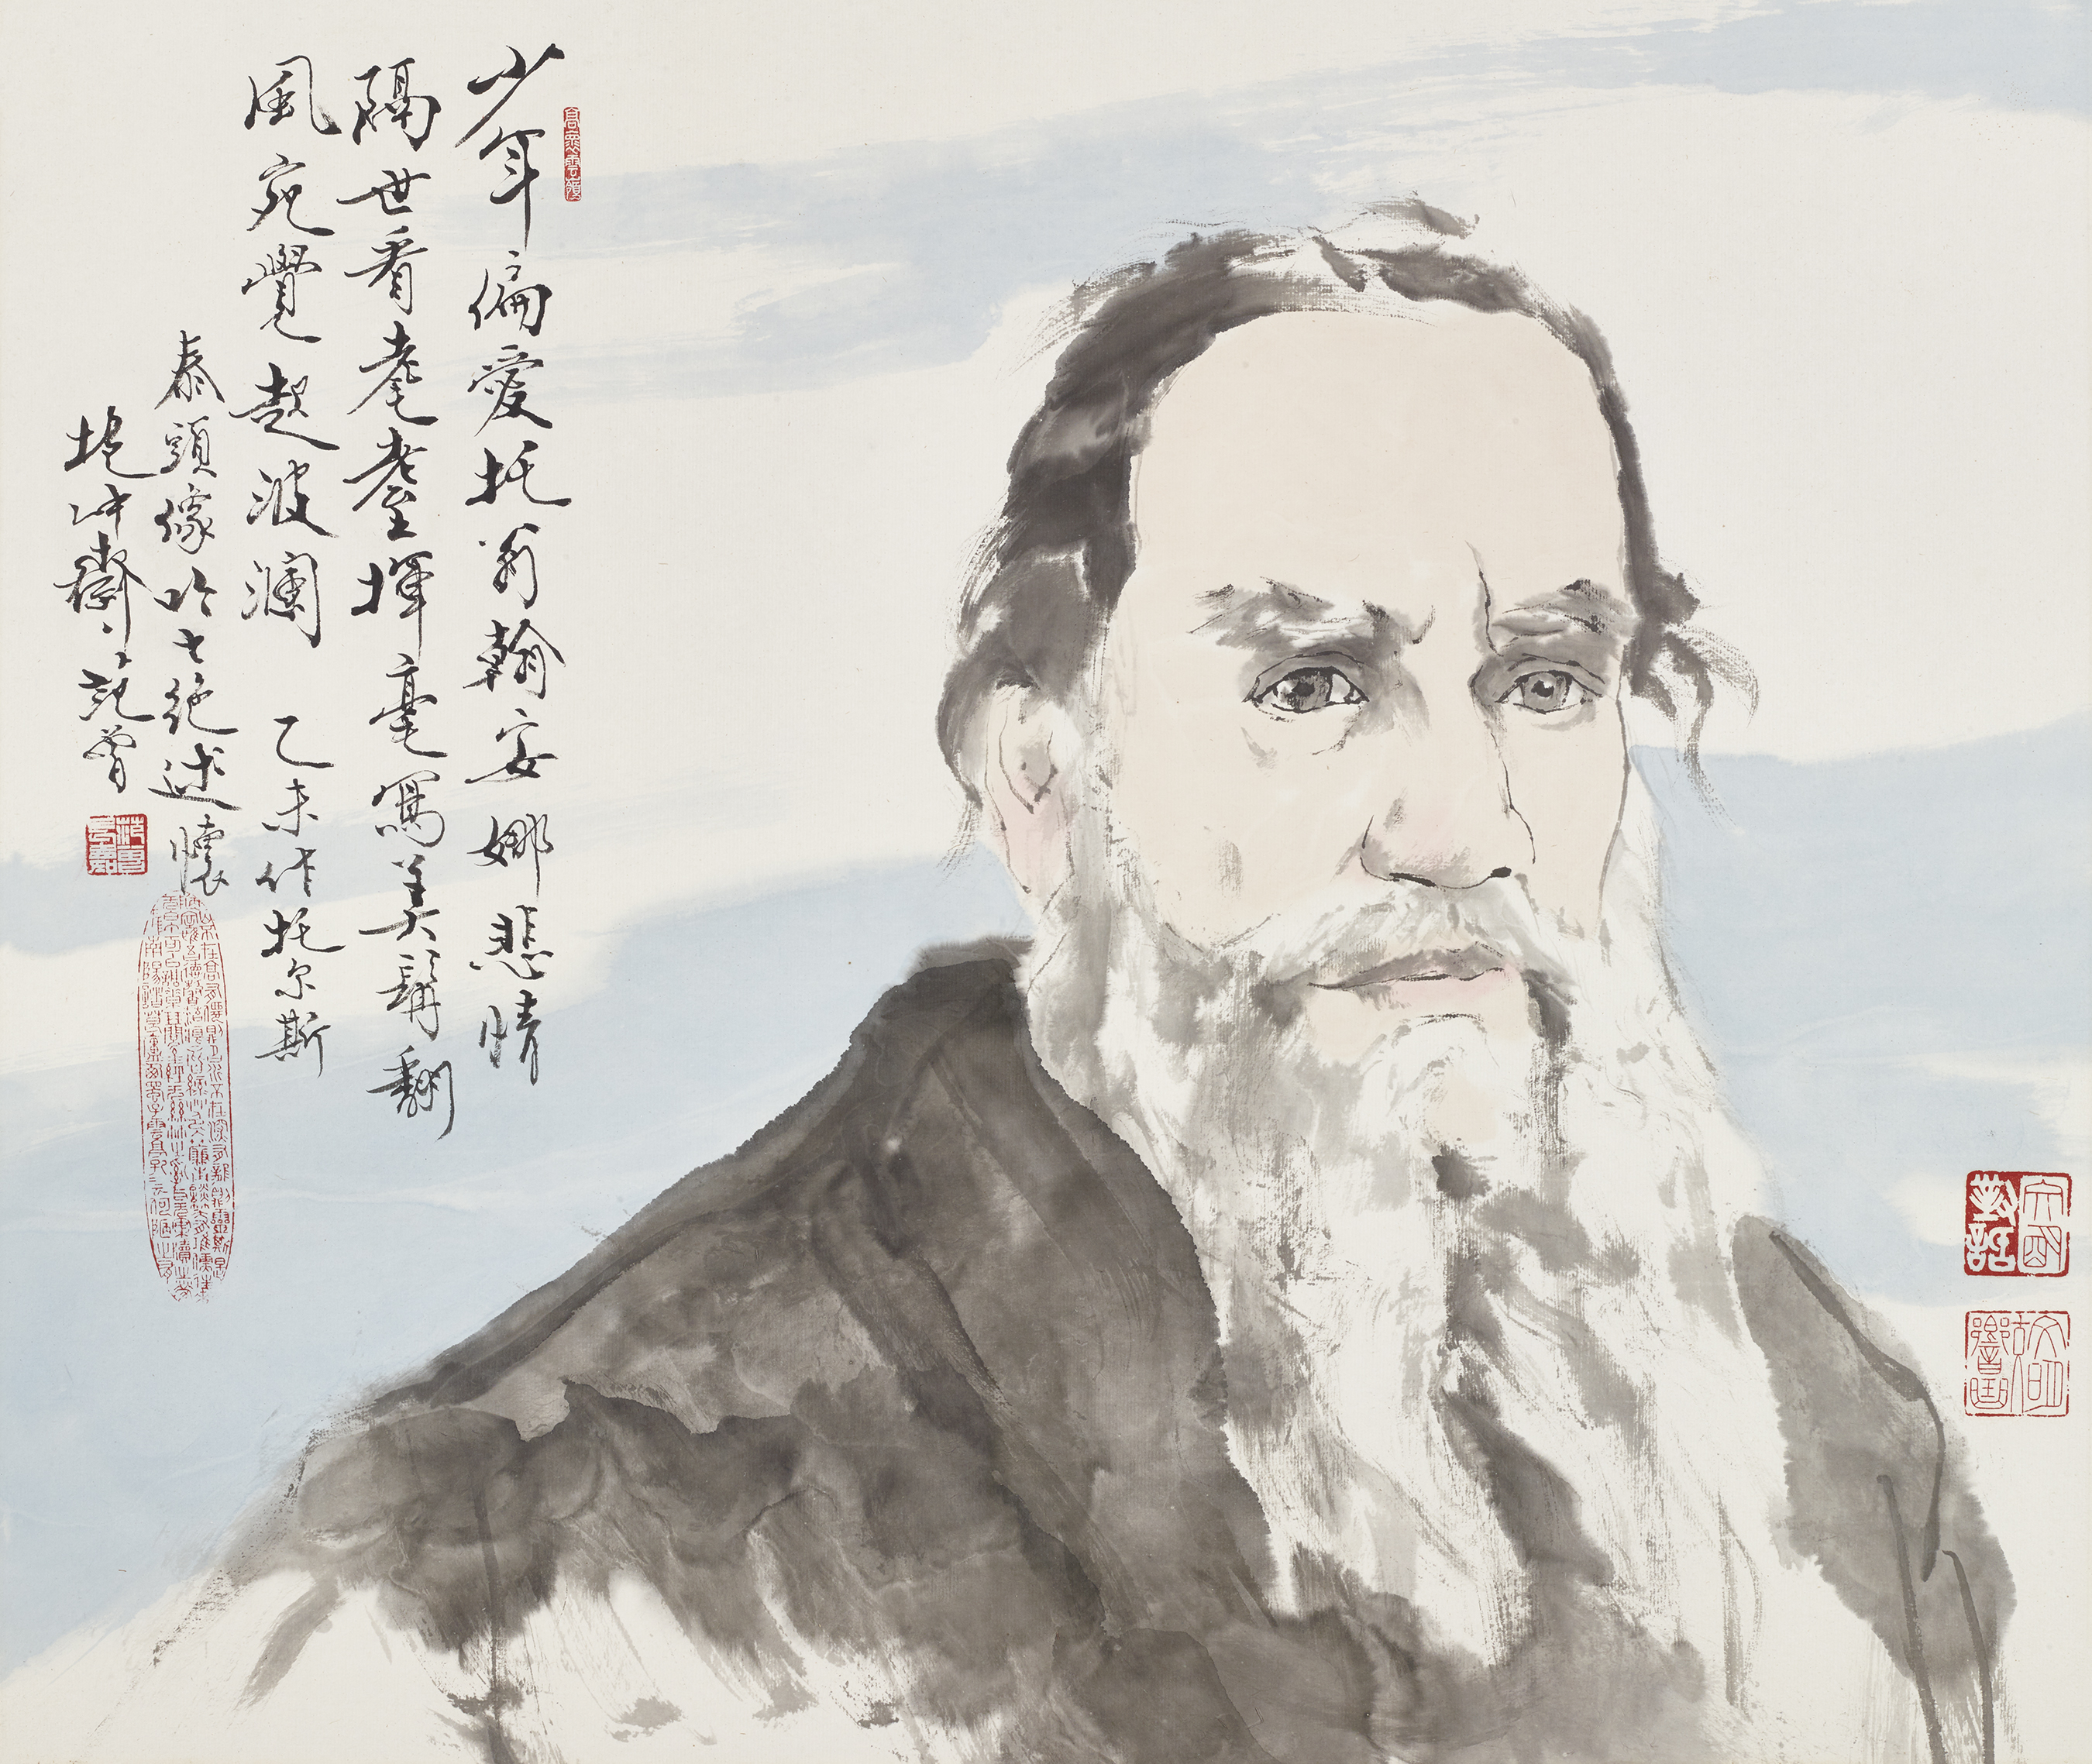 A portrait of Russian novelist Leo Tolstoy by Fan Zeng. /CGTN